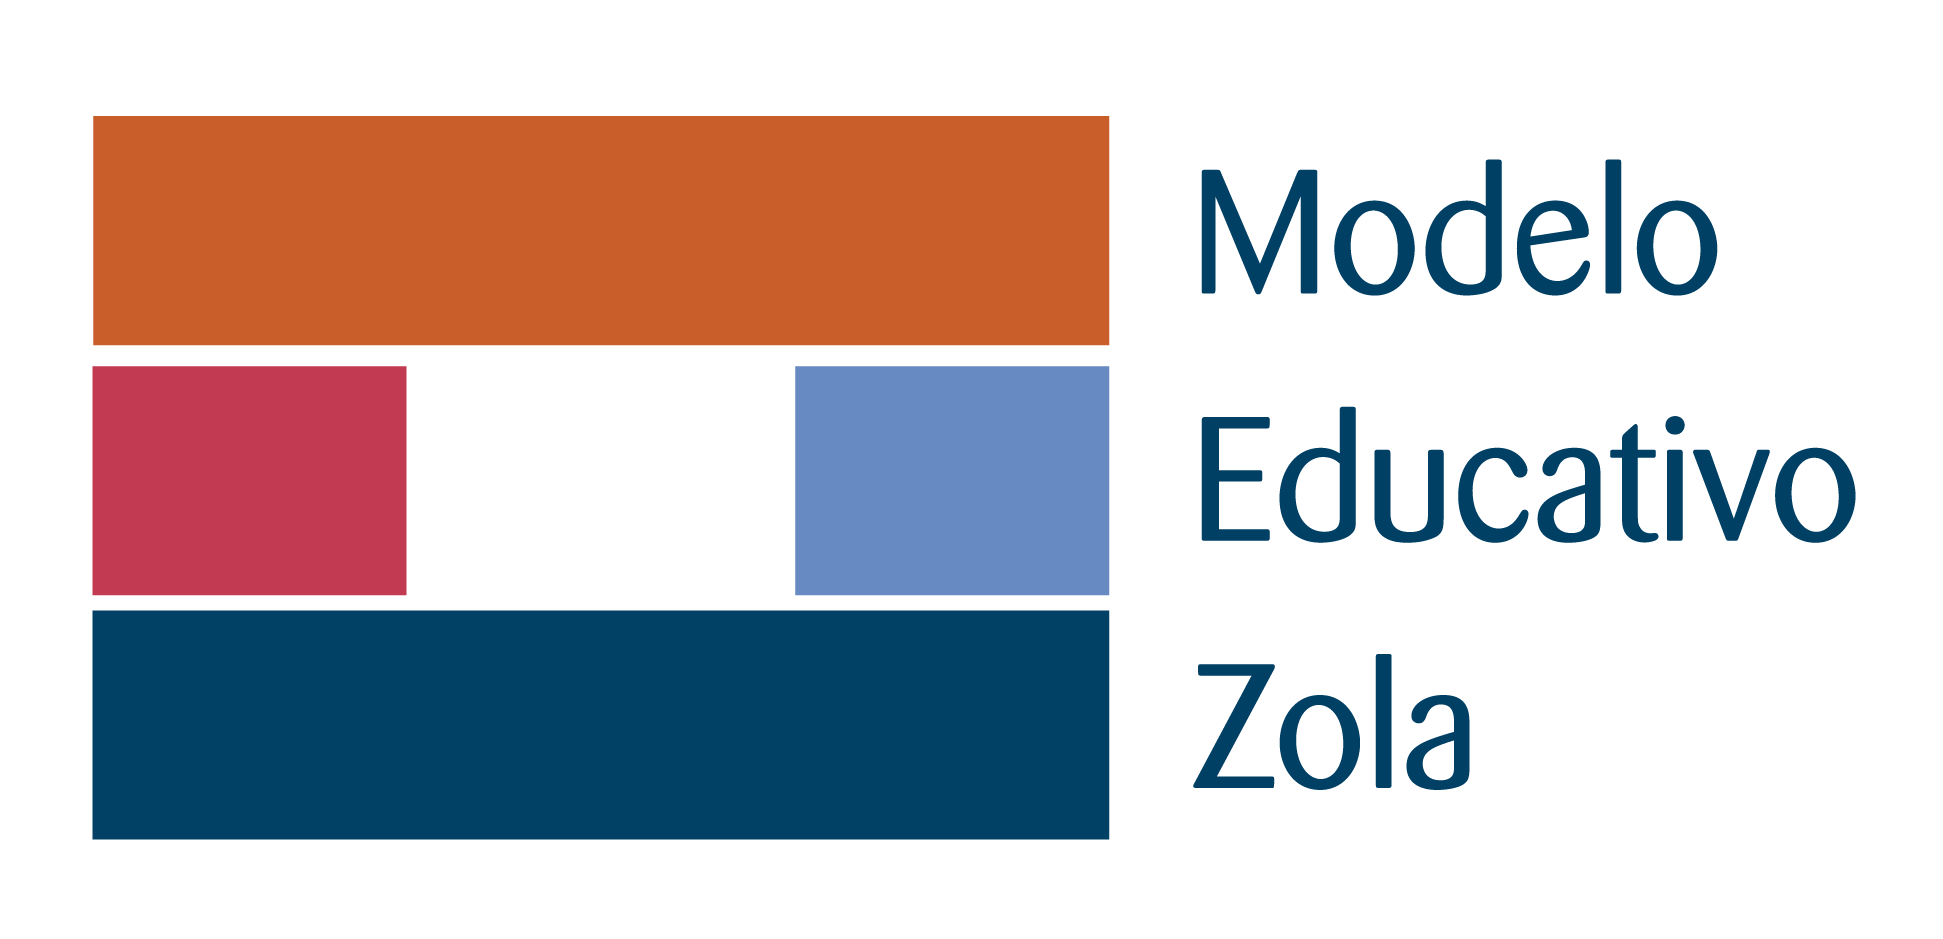 Modelo educativo Zola